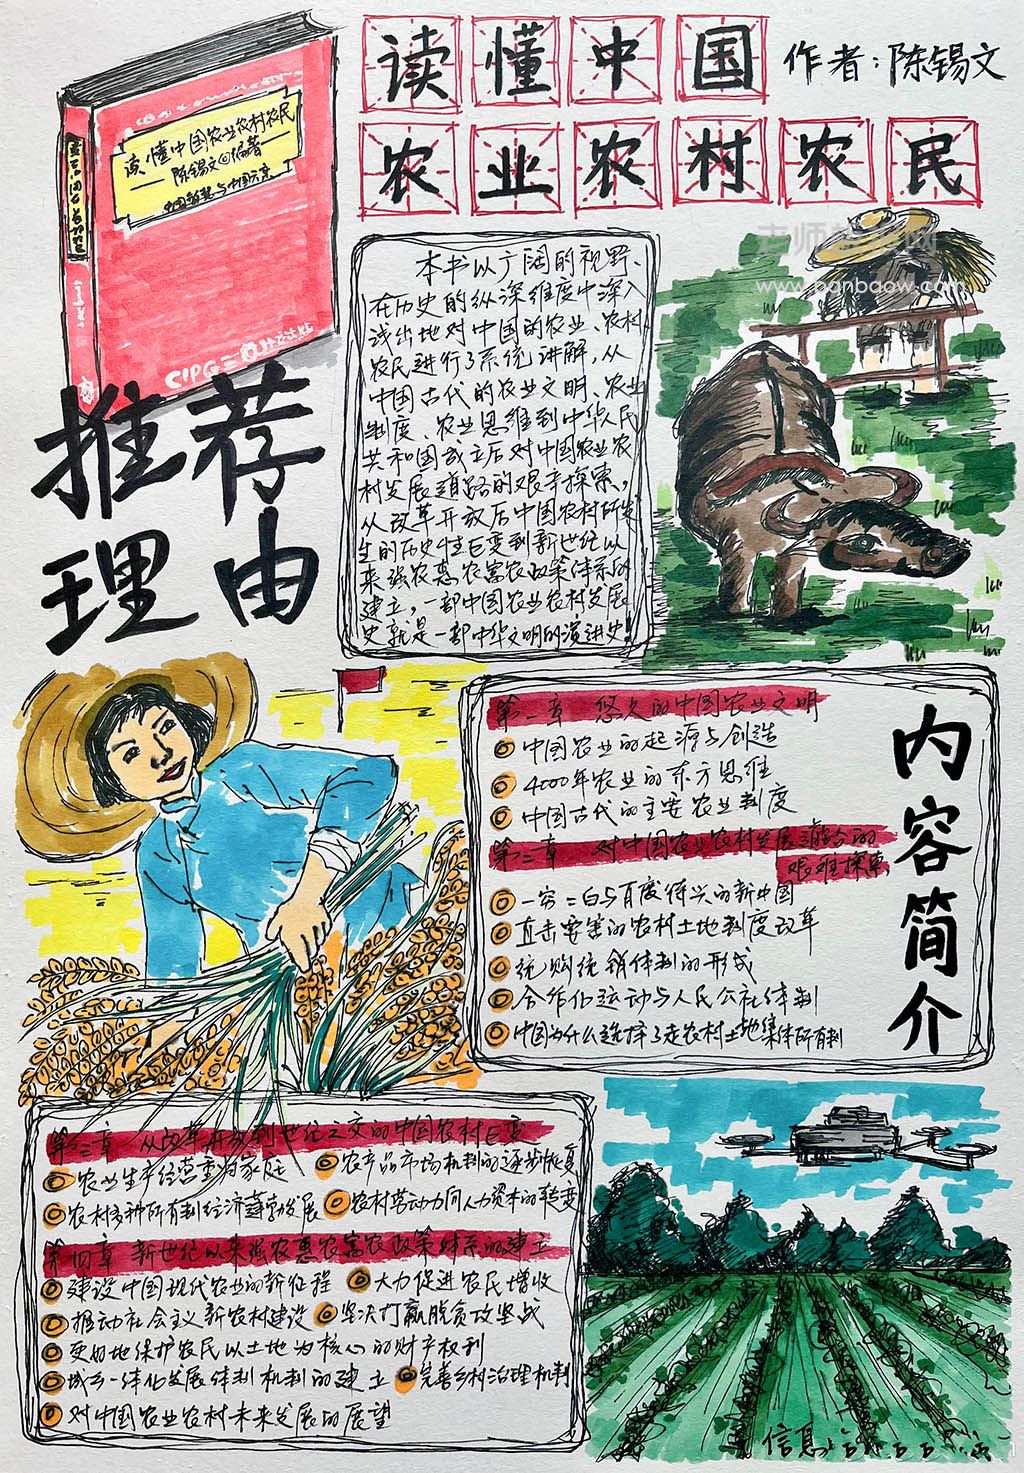 《读懂中国农业农村农民》主题手抄报绘画图片